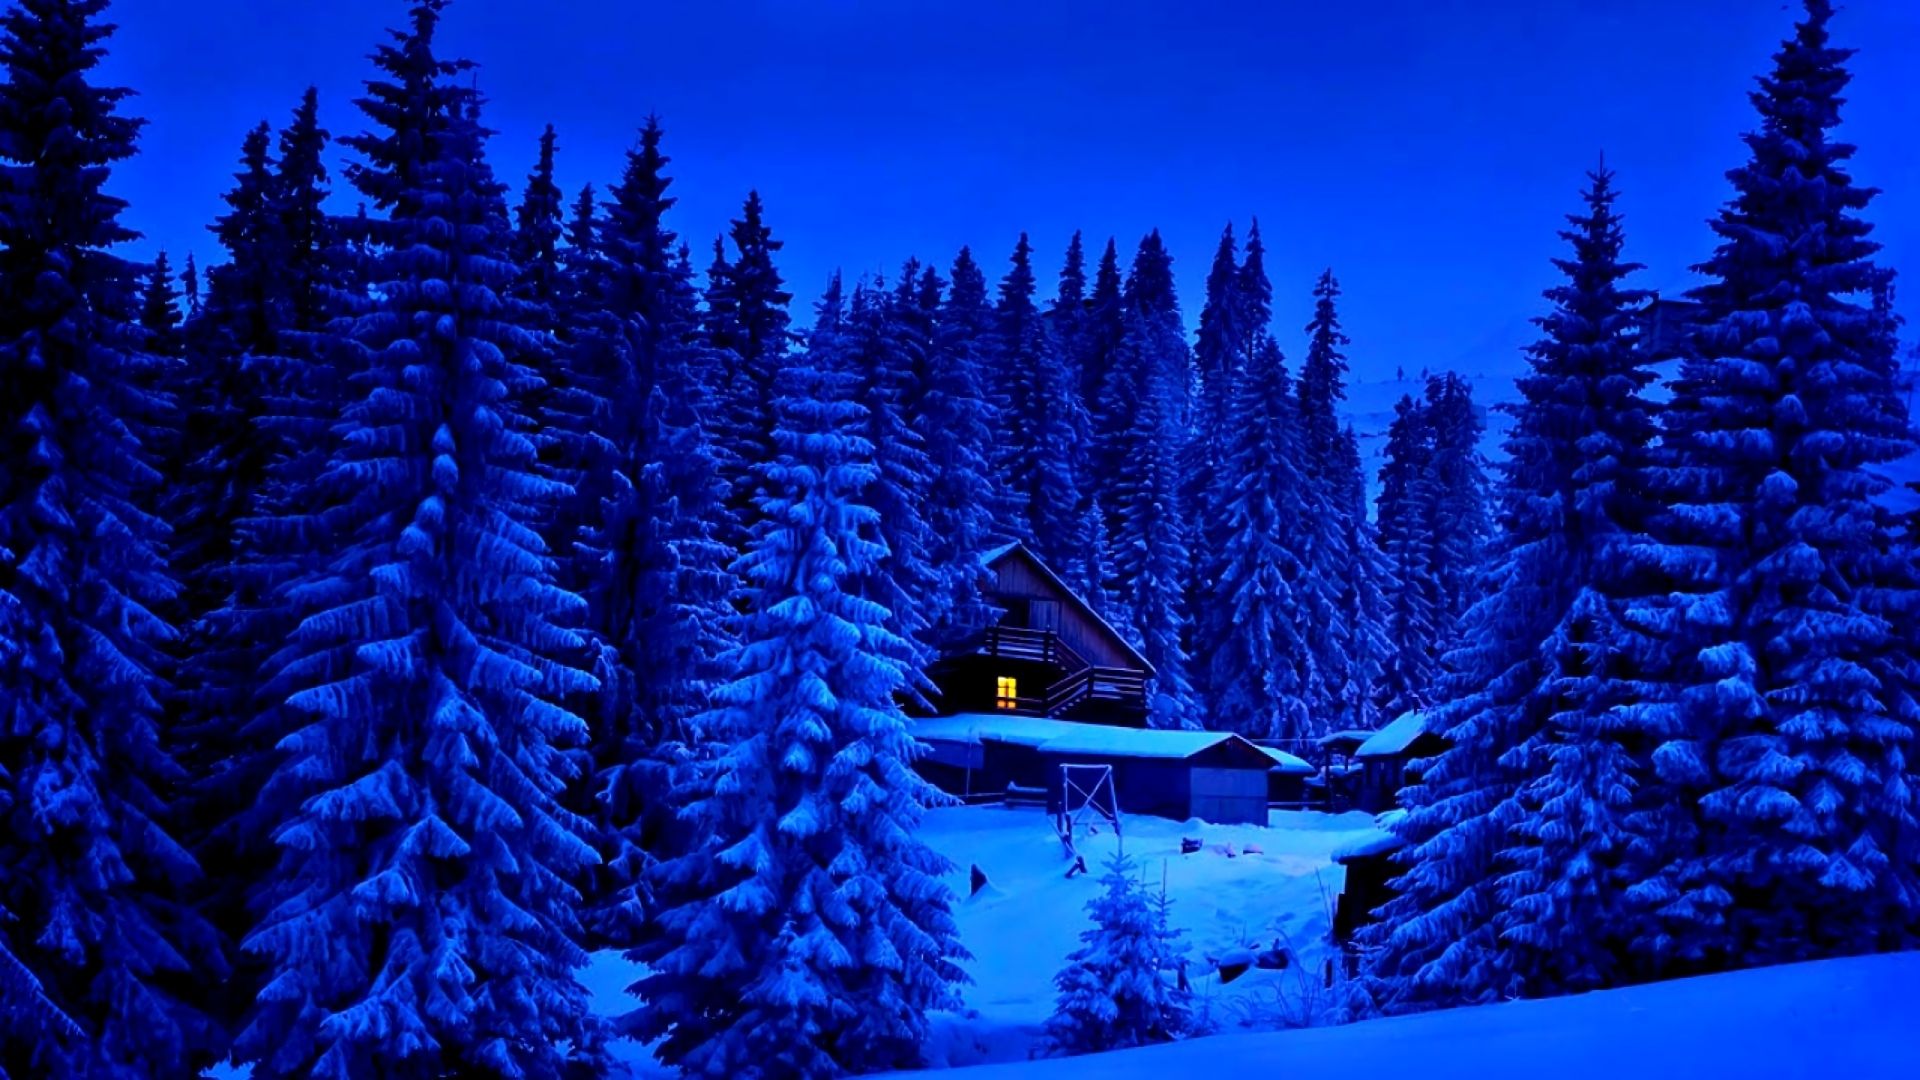 Скачать картинку Зима, Снег, Лес, Дерево, Синий, Дом, Фотографии в телефон бесплатно.